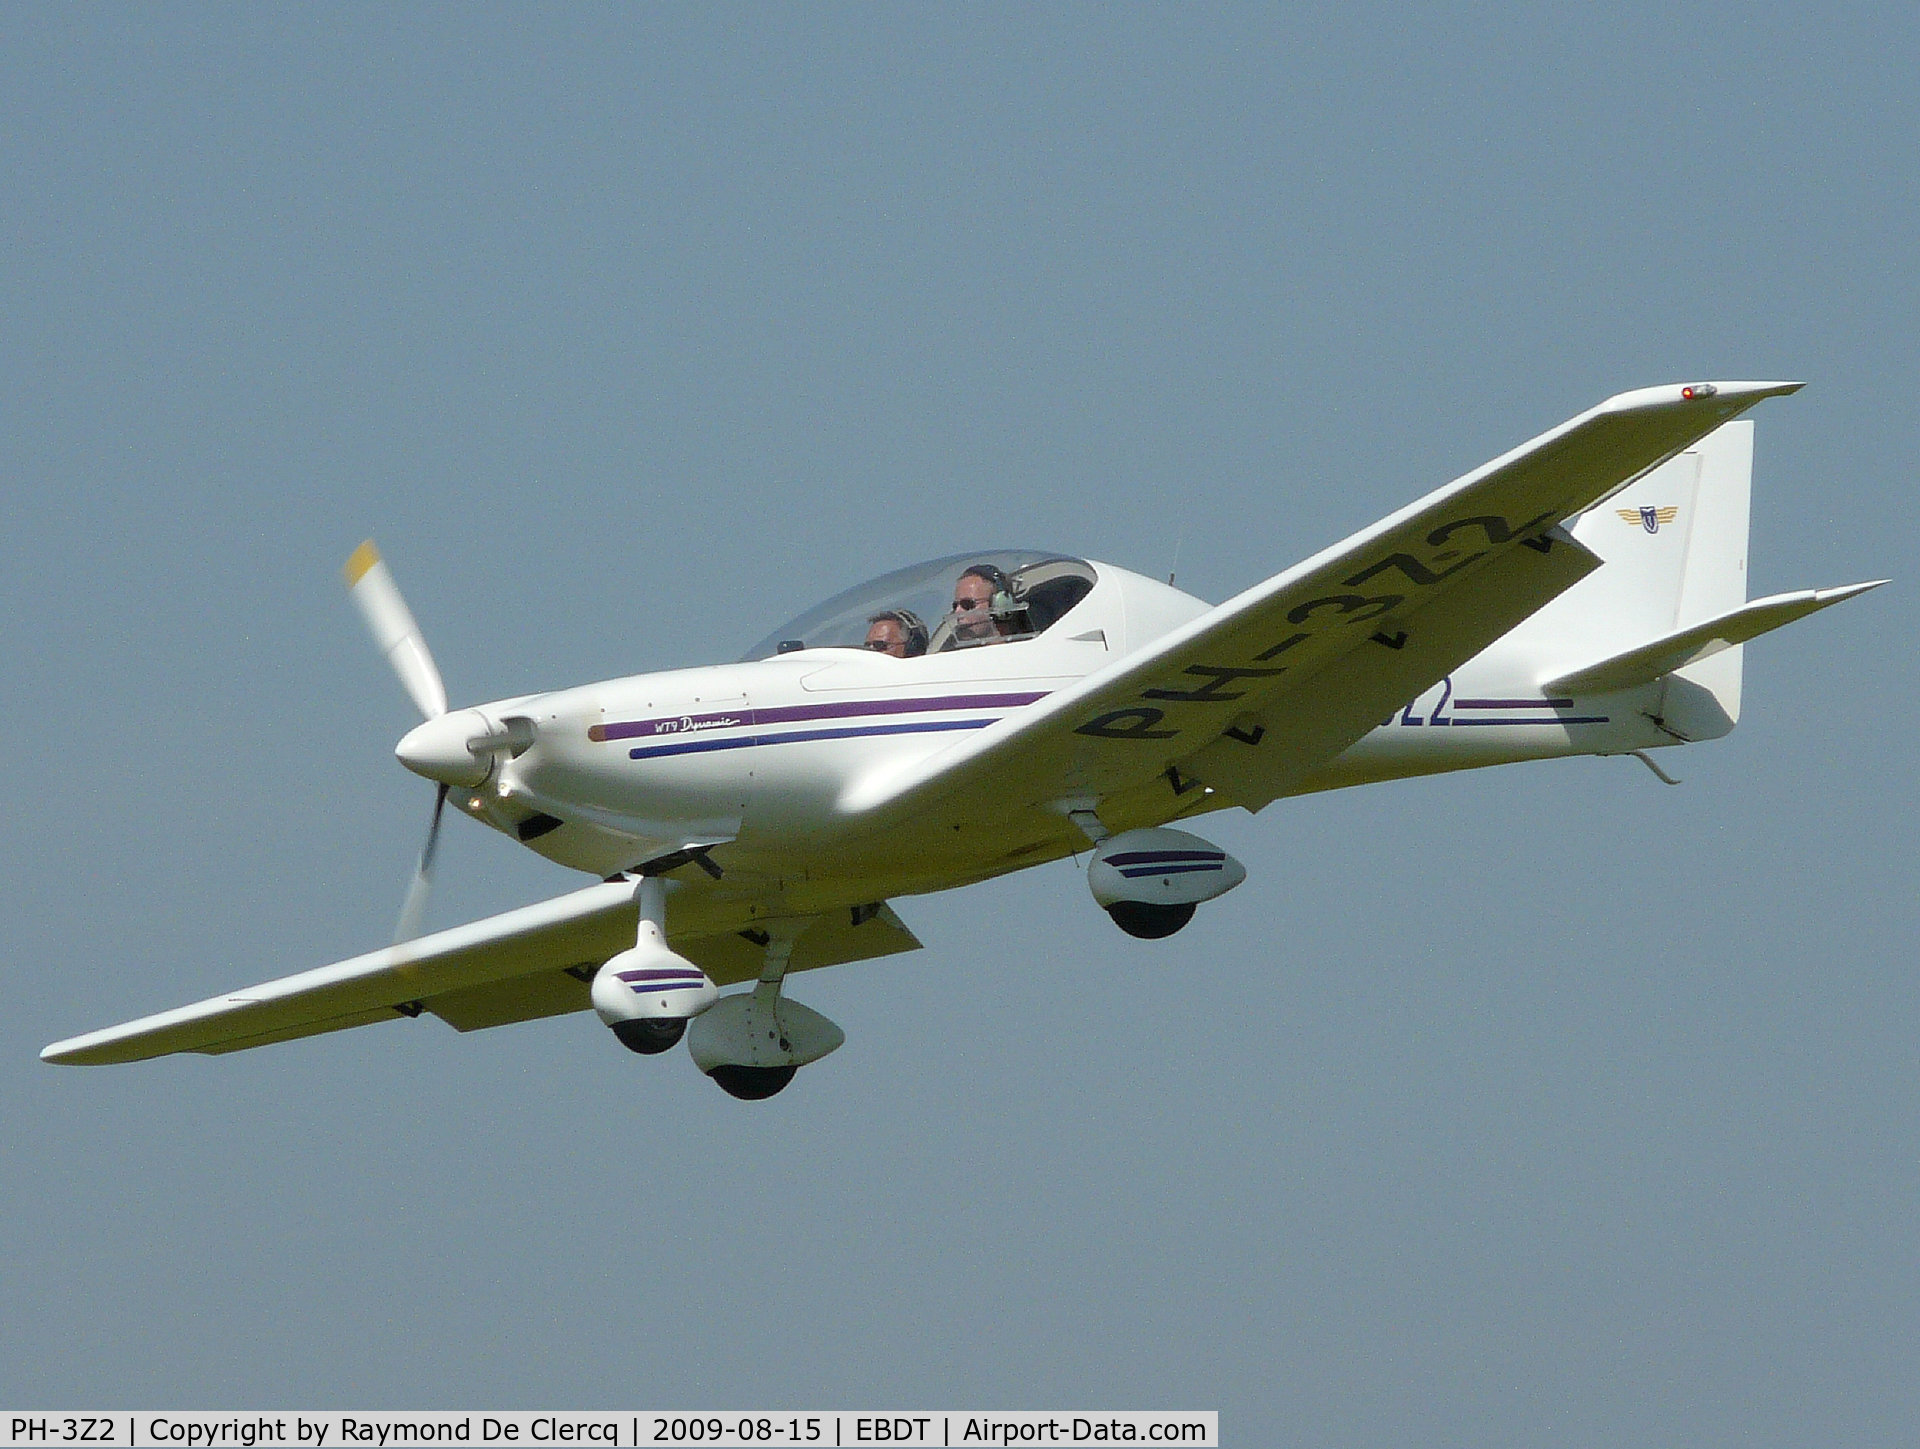 PH-3Z2, 2006 Aerospool WT-9 Dynamic C/N DY137/2006, Landing at 2009 Schaffen fly in.